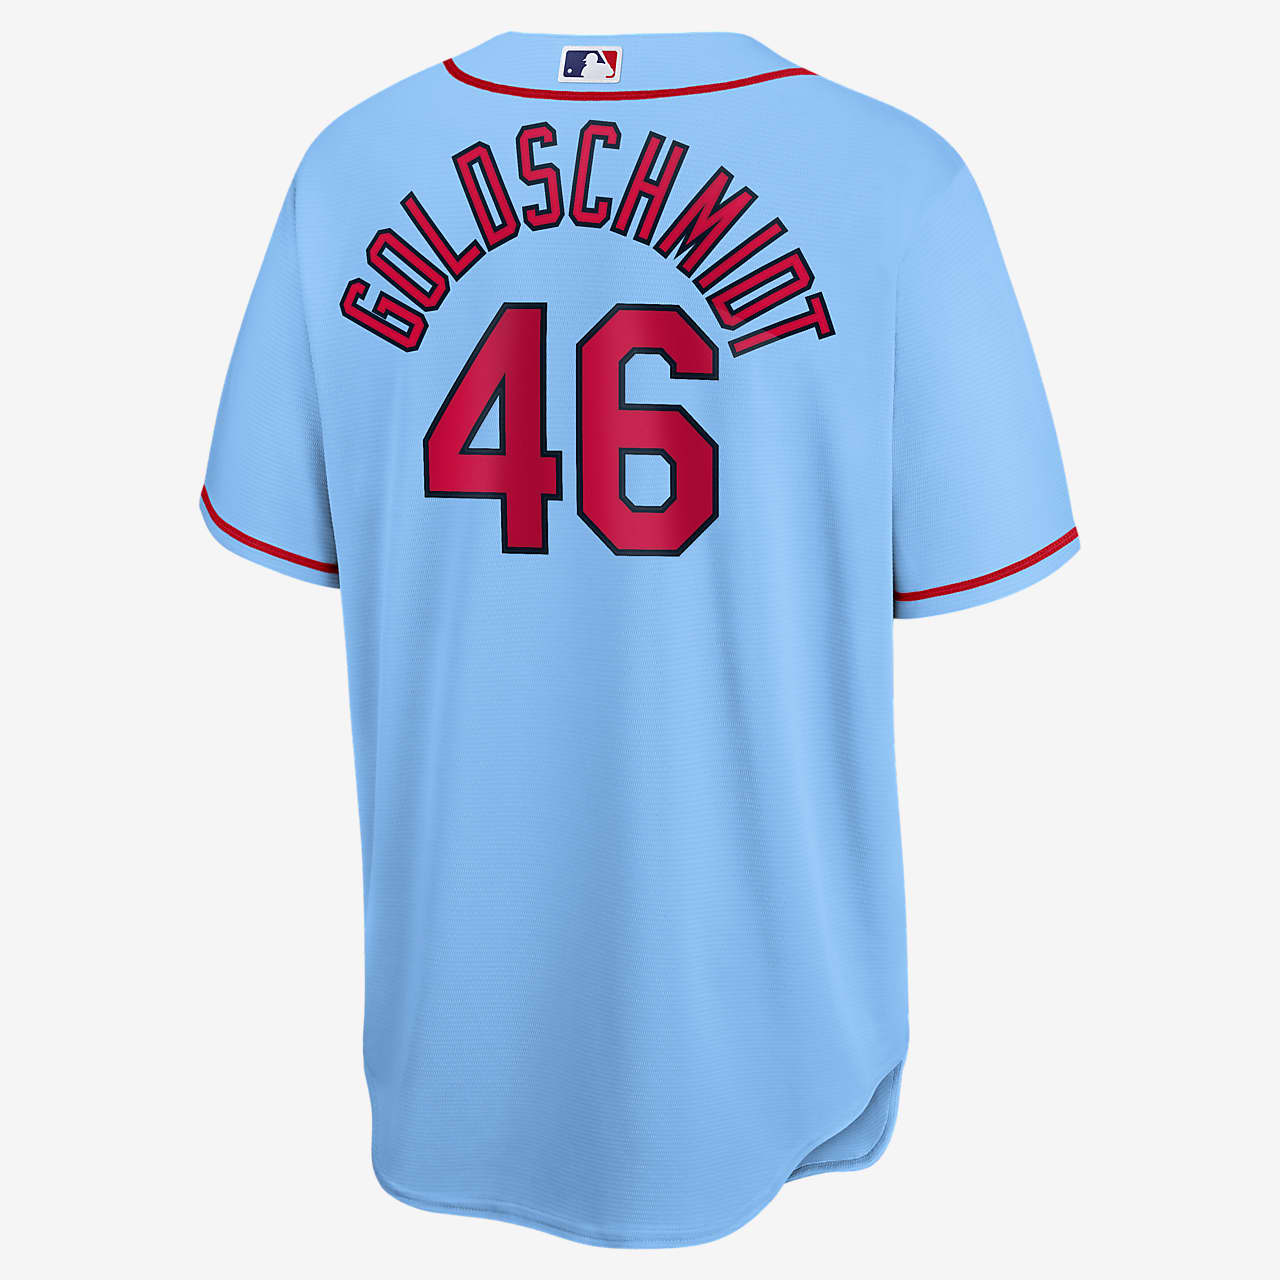 MLB St. Louis Cardinals (Paul Goldschmidt) Men's Replica Baseball Jersey.